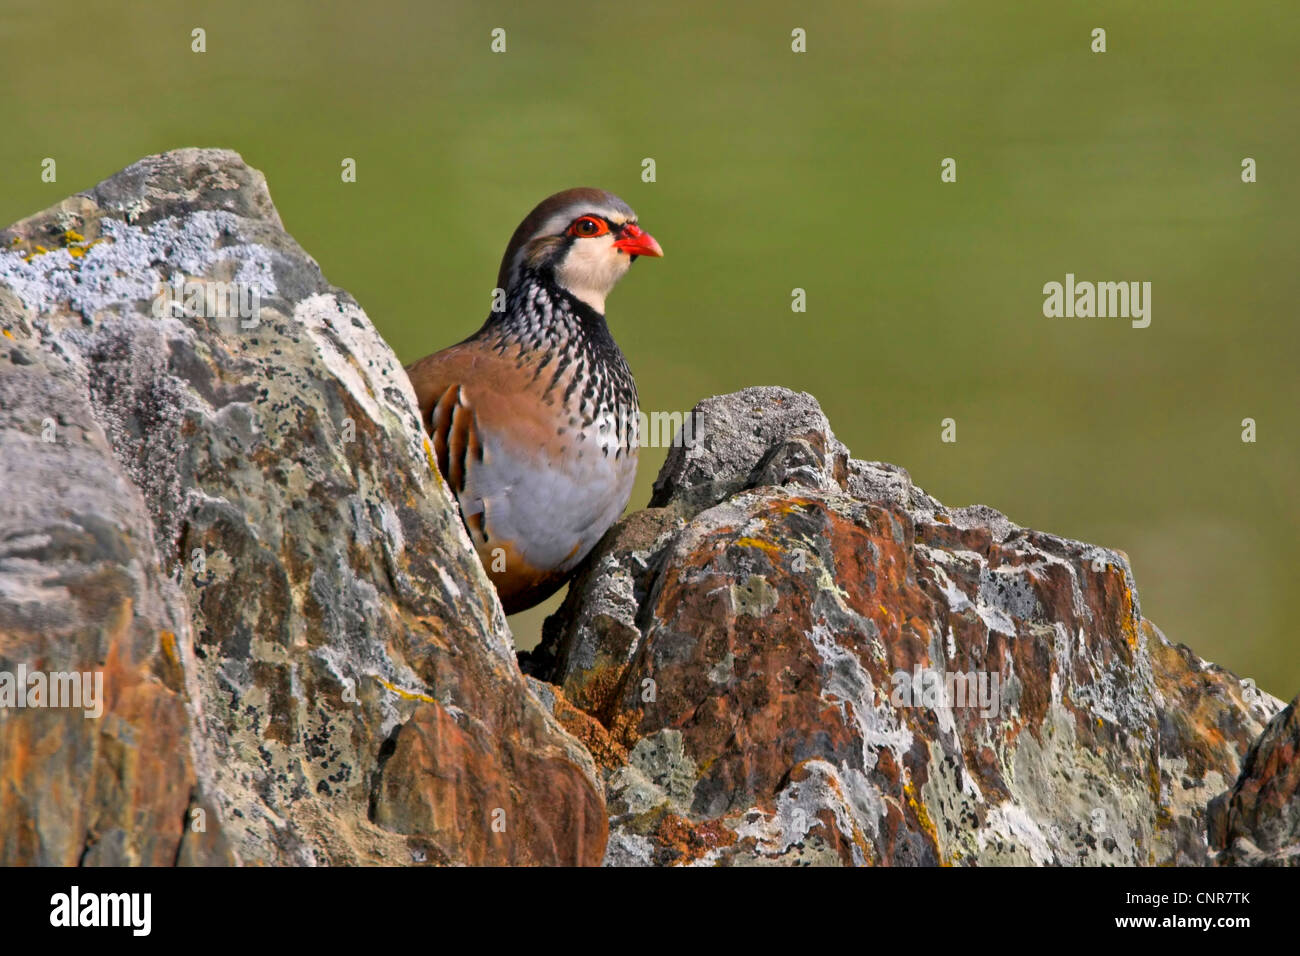 Red-legged partridge (Alectoris rufa), sur les rochers, de l'Europe Banque D'Images